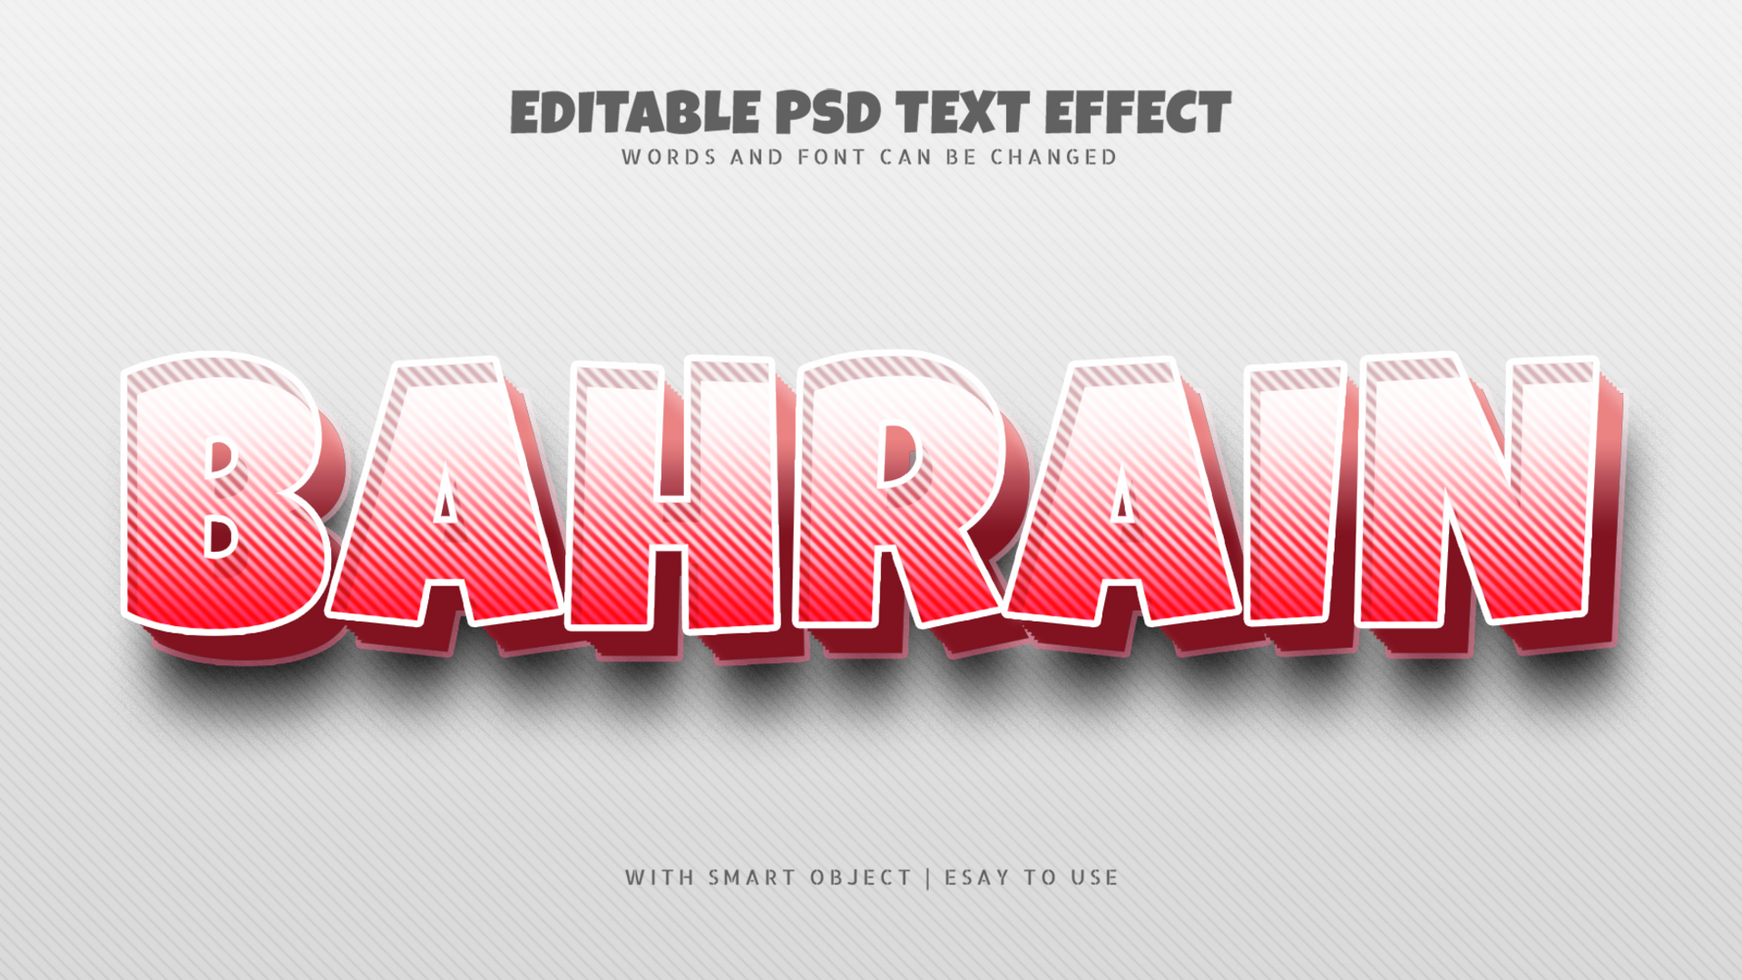 Bahrain 3d text effect editable psd